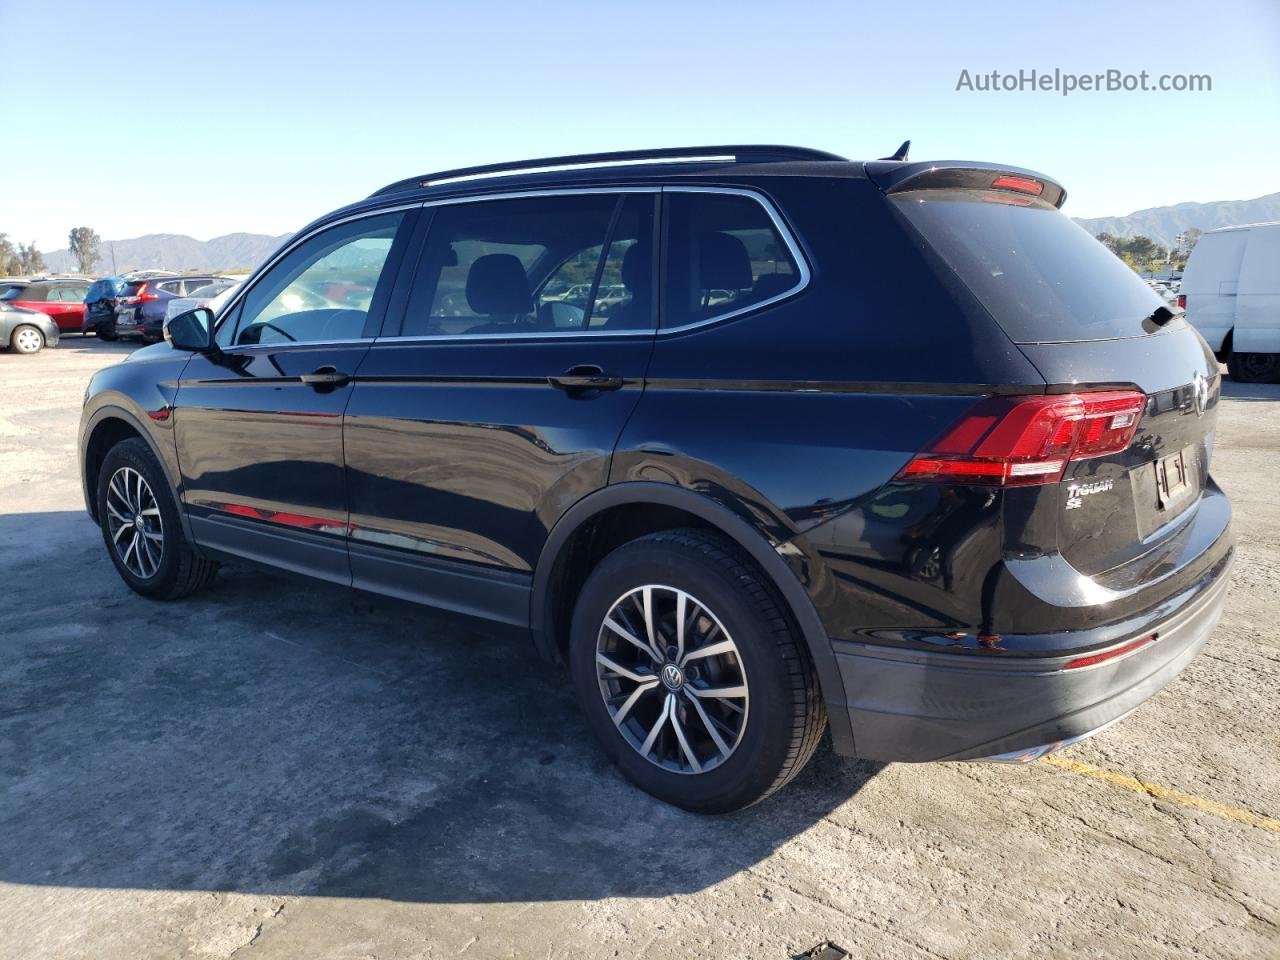 2019 Volkswagen Tiguan Se Black vin: 3VV3B7AX2KM047768